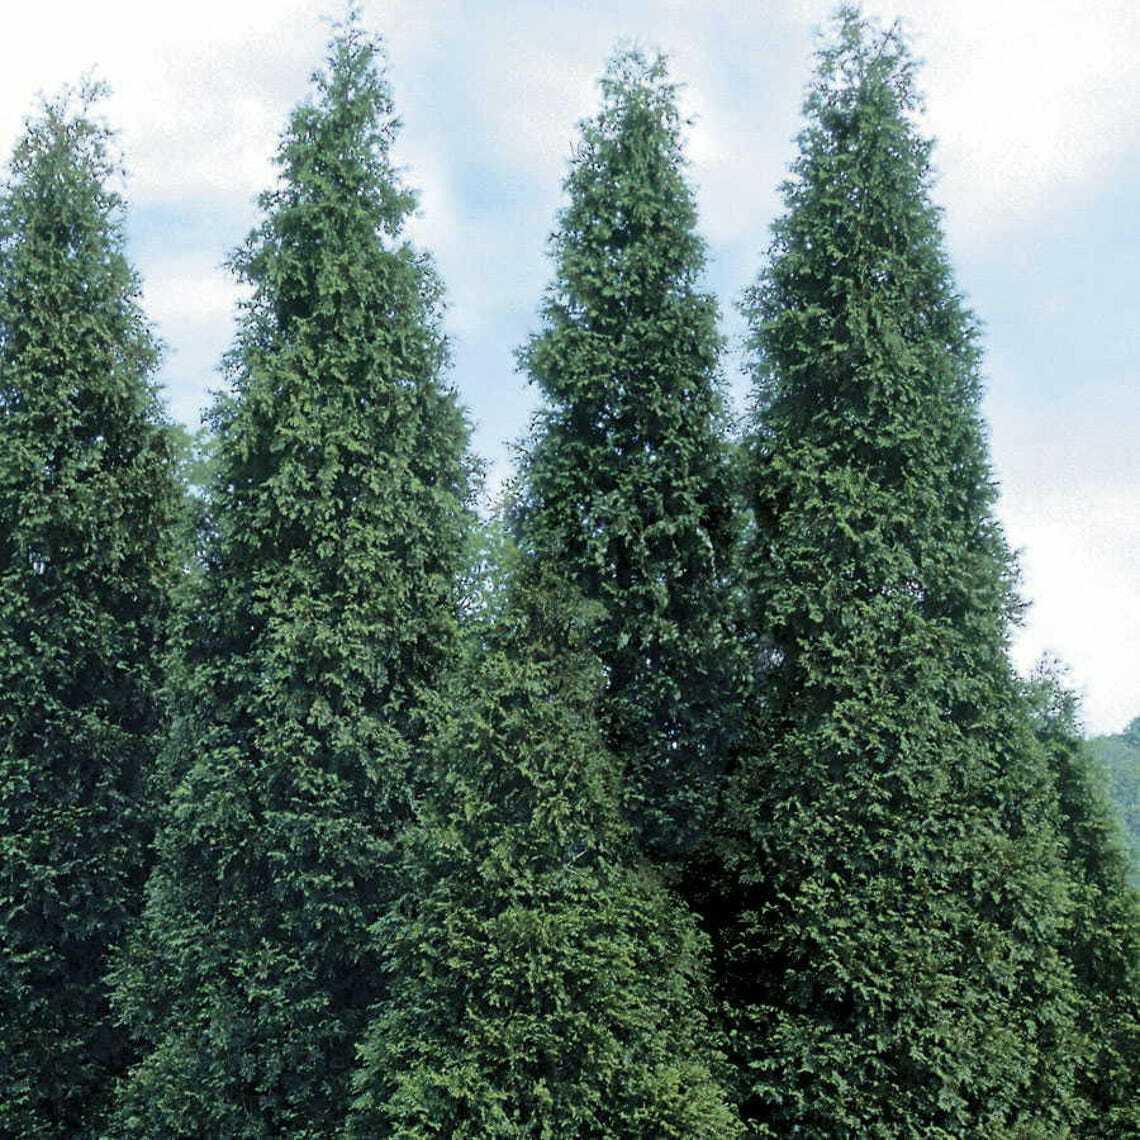 25 Thuja Green Giant Arborvitae Trees/Shrubs - 12-16" Tall Seedlings - Live Plants - 3" Pots - The Nursery Center